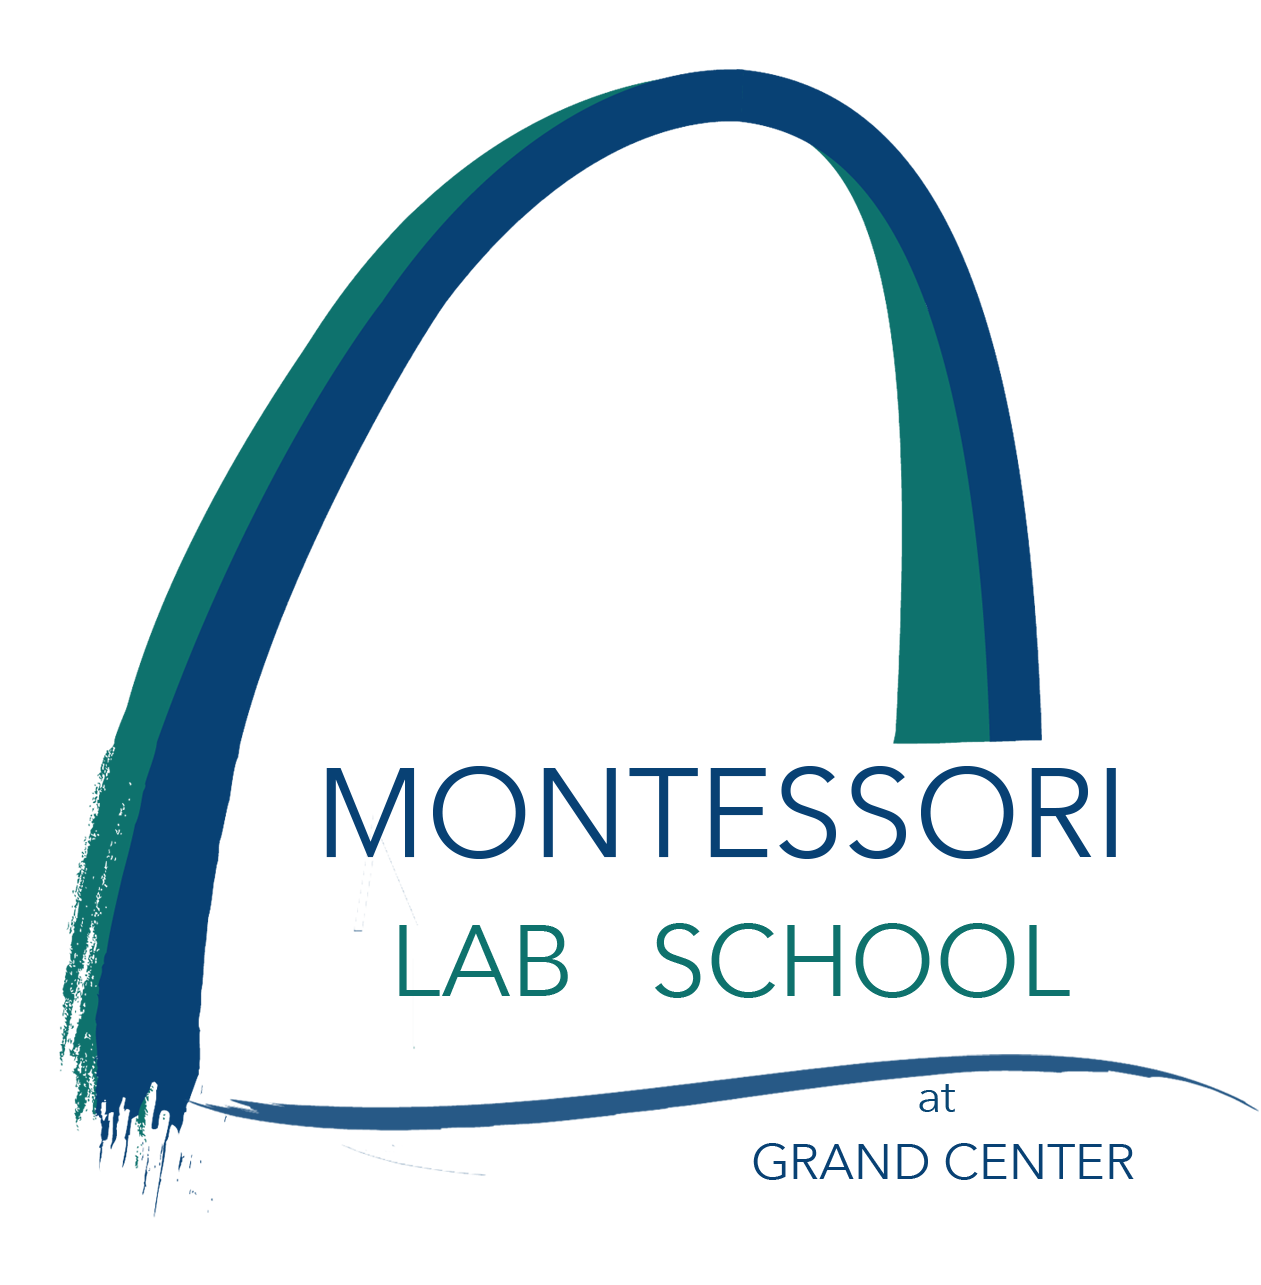 Montessori Lab School at Grand Center